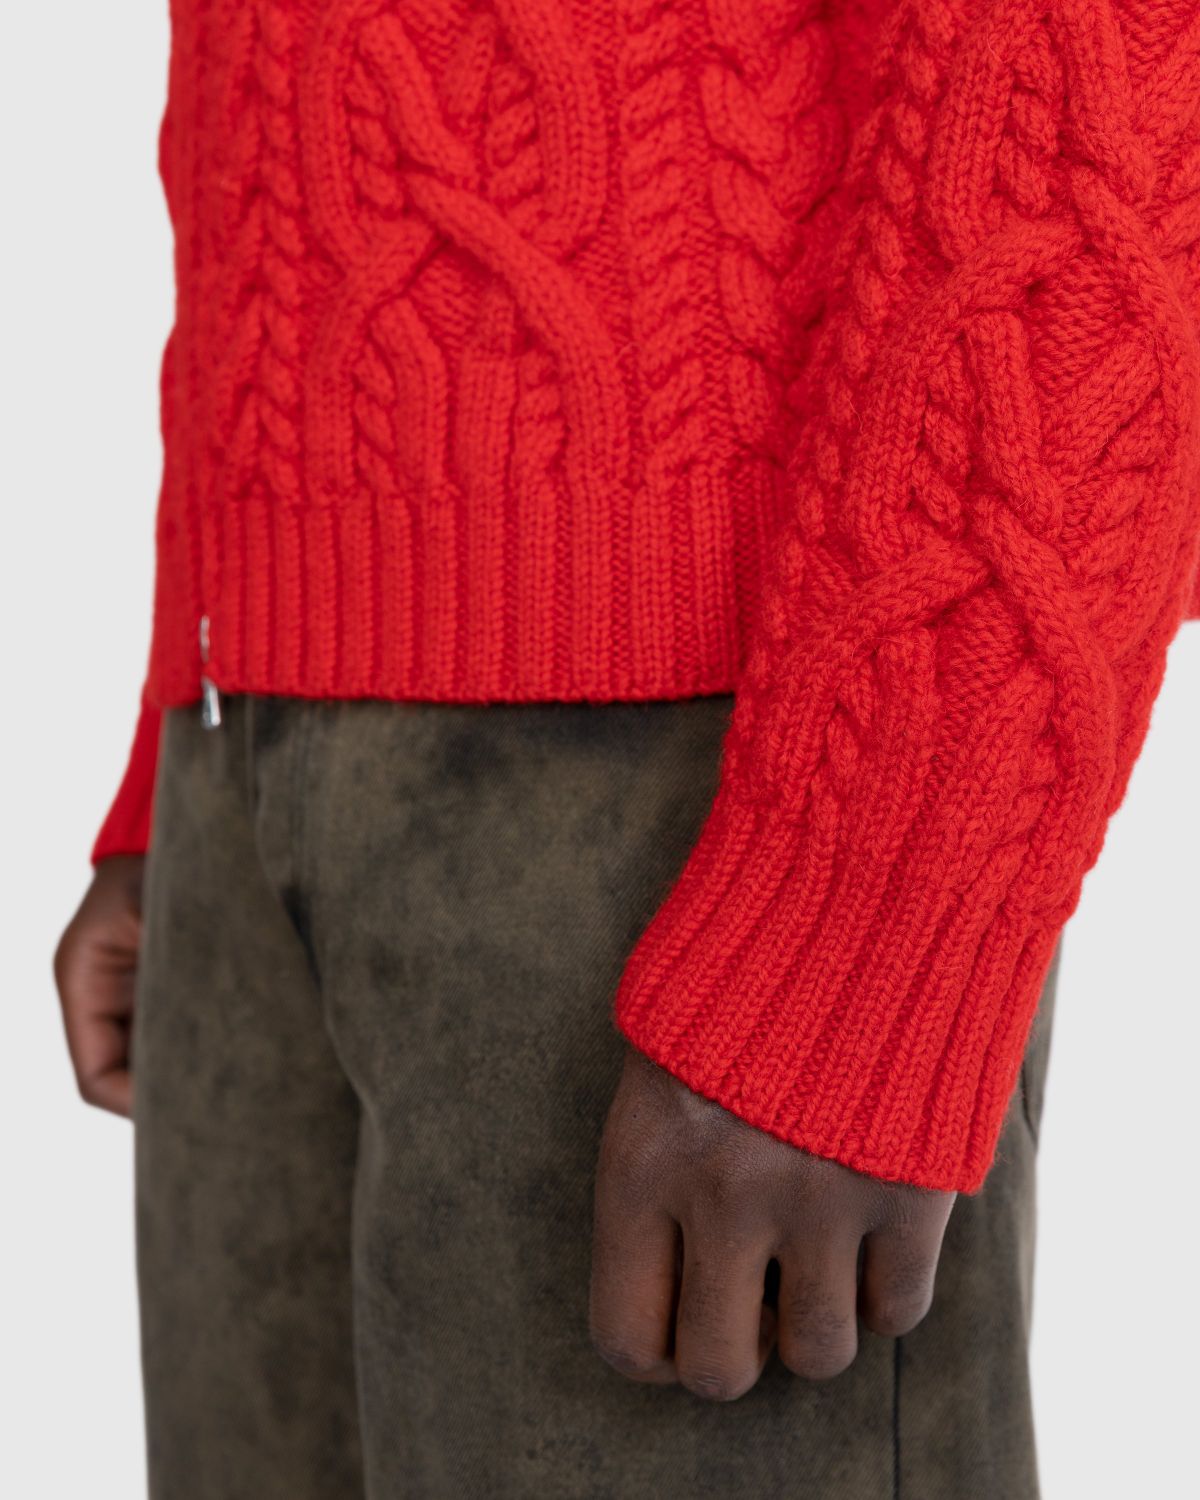 Dries van Noten – Naldo Cardigan Red - Knitwear - Red - Image 5